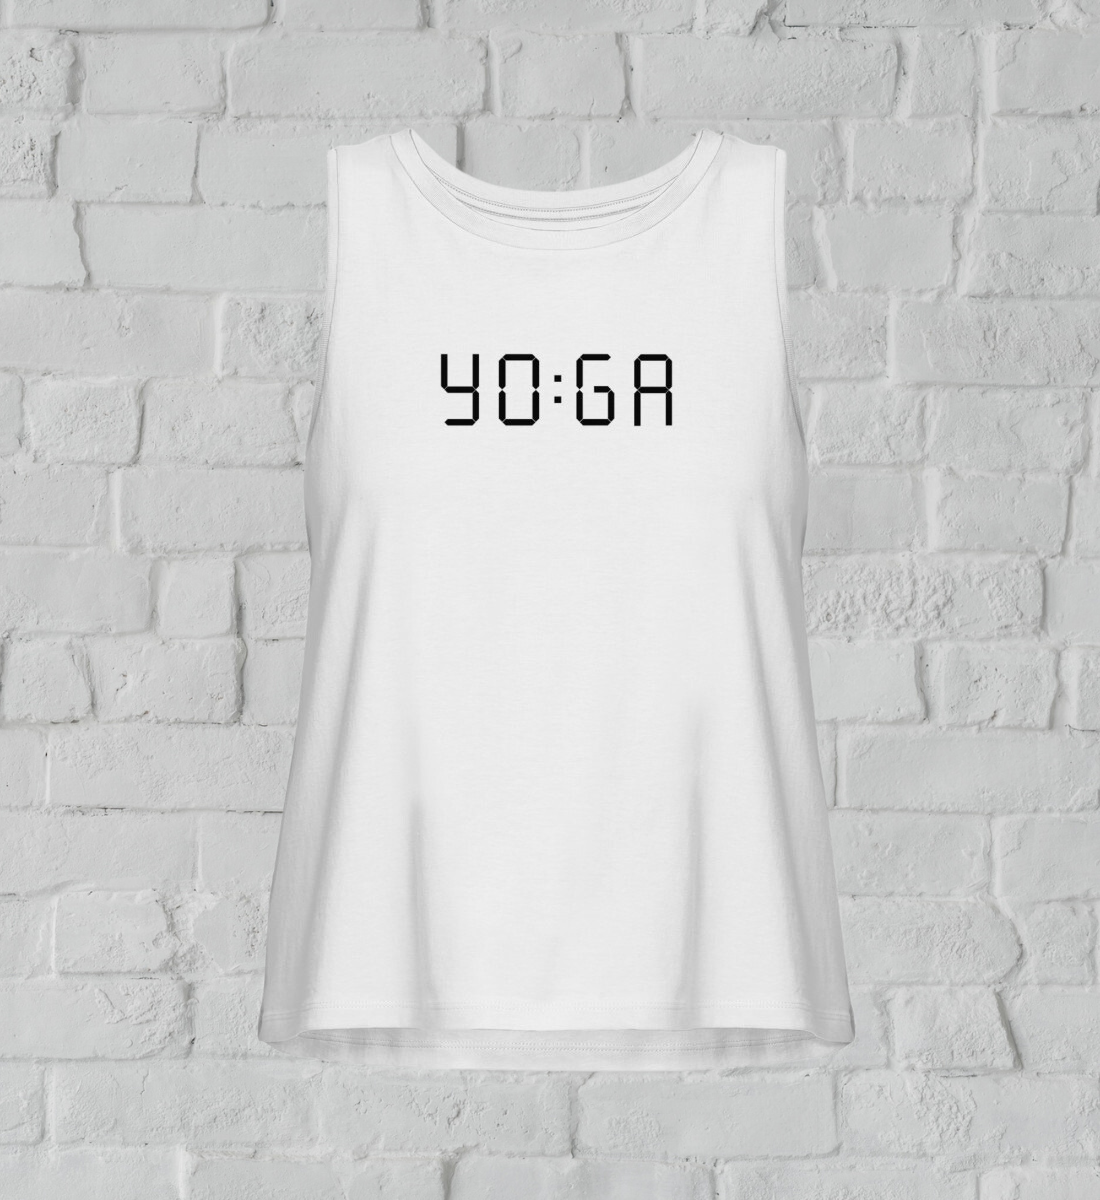 zeit für yoga l yoga tank top damen weiß l bio top l schöne yoga kleidung l vegane und umweltfreundliche produkte online shoppen